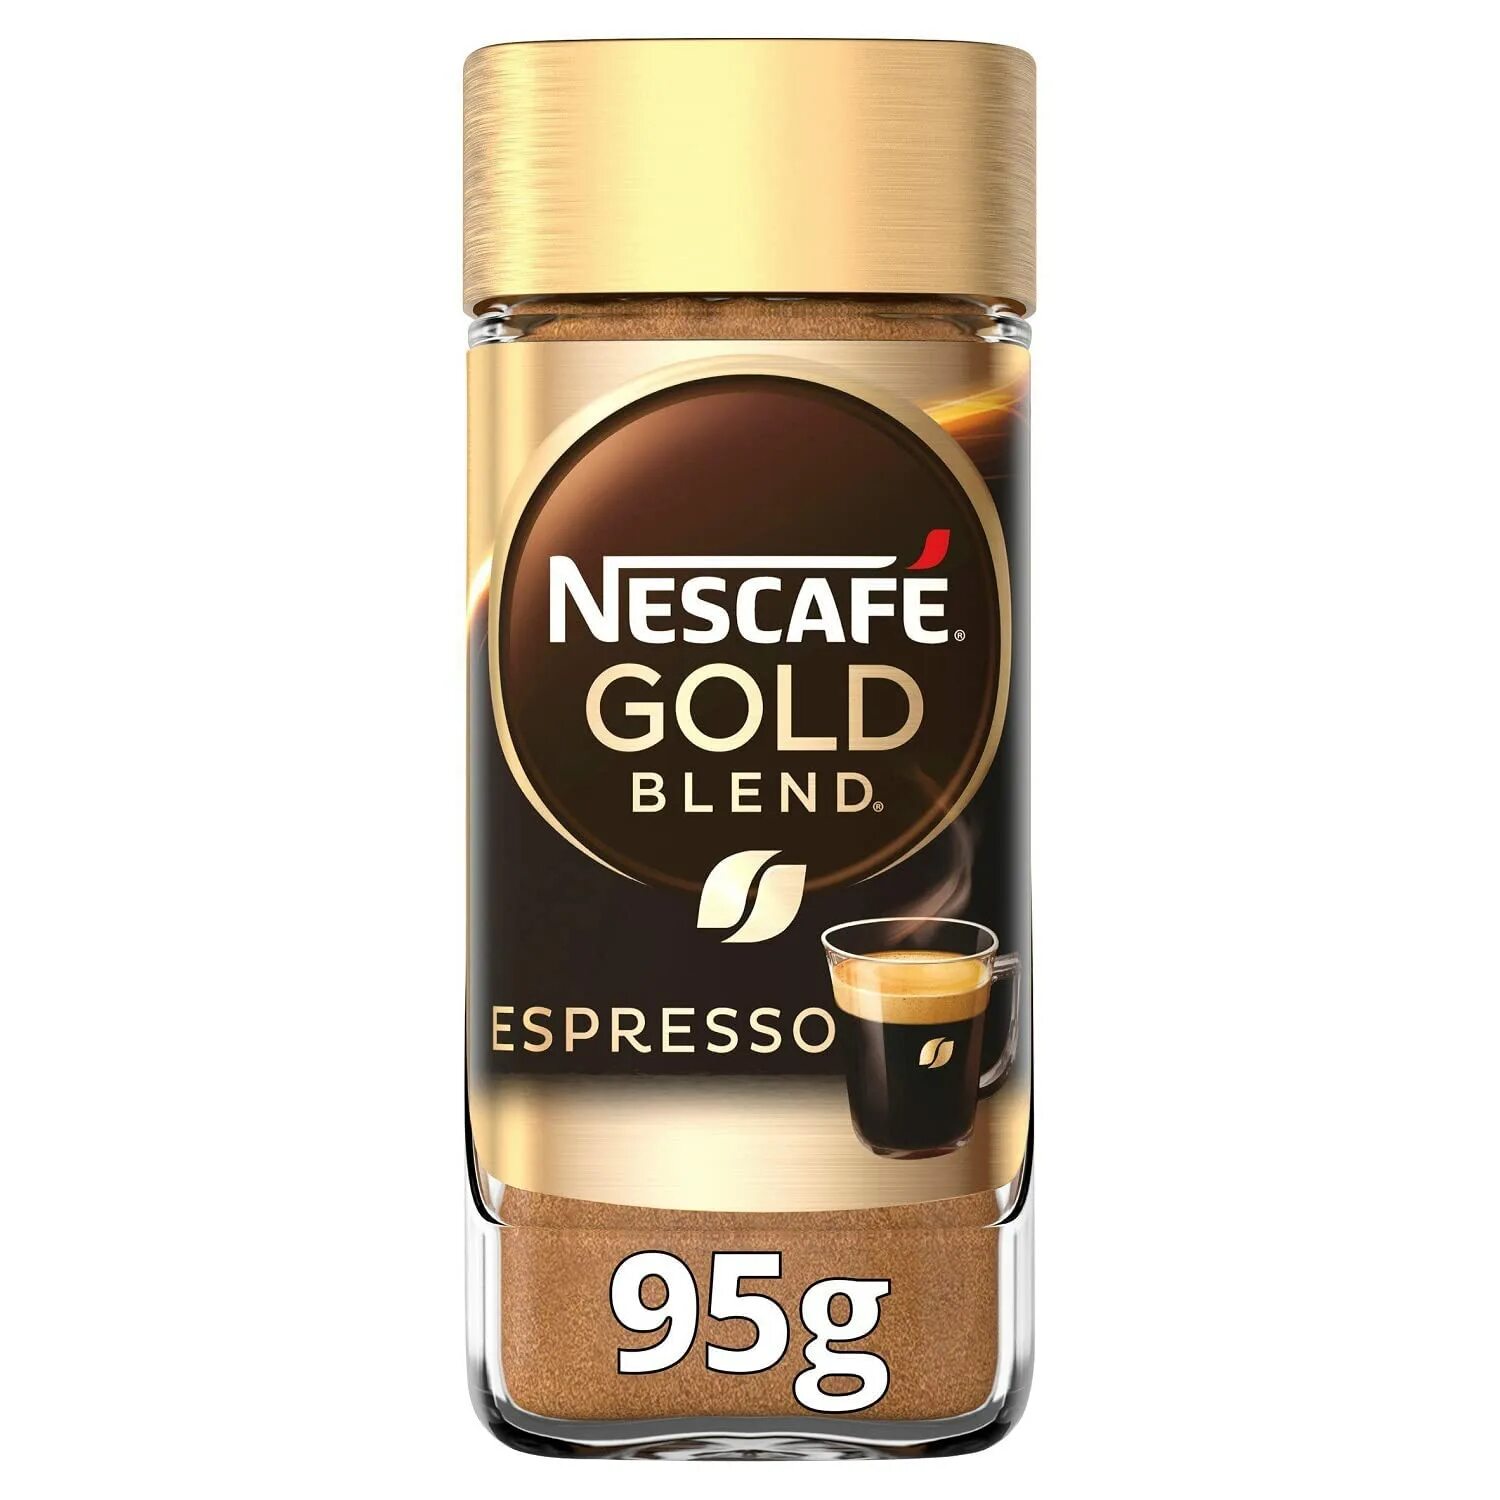 Эспрессо растворимый. Кофе Нескафе Голд эспрессо. Nescafe Gold SB 95g. Кофе Nescafe Gold Espresso растворимый. Нескафе Голд эспрессо Арабика.